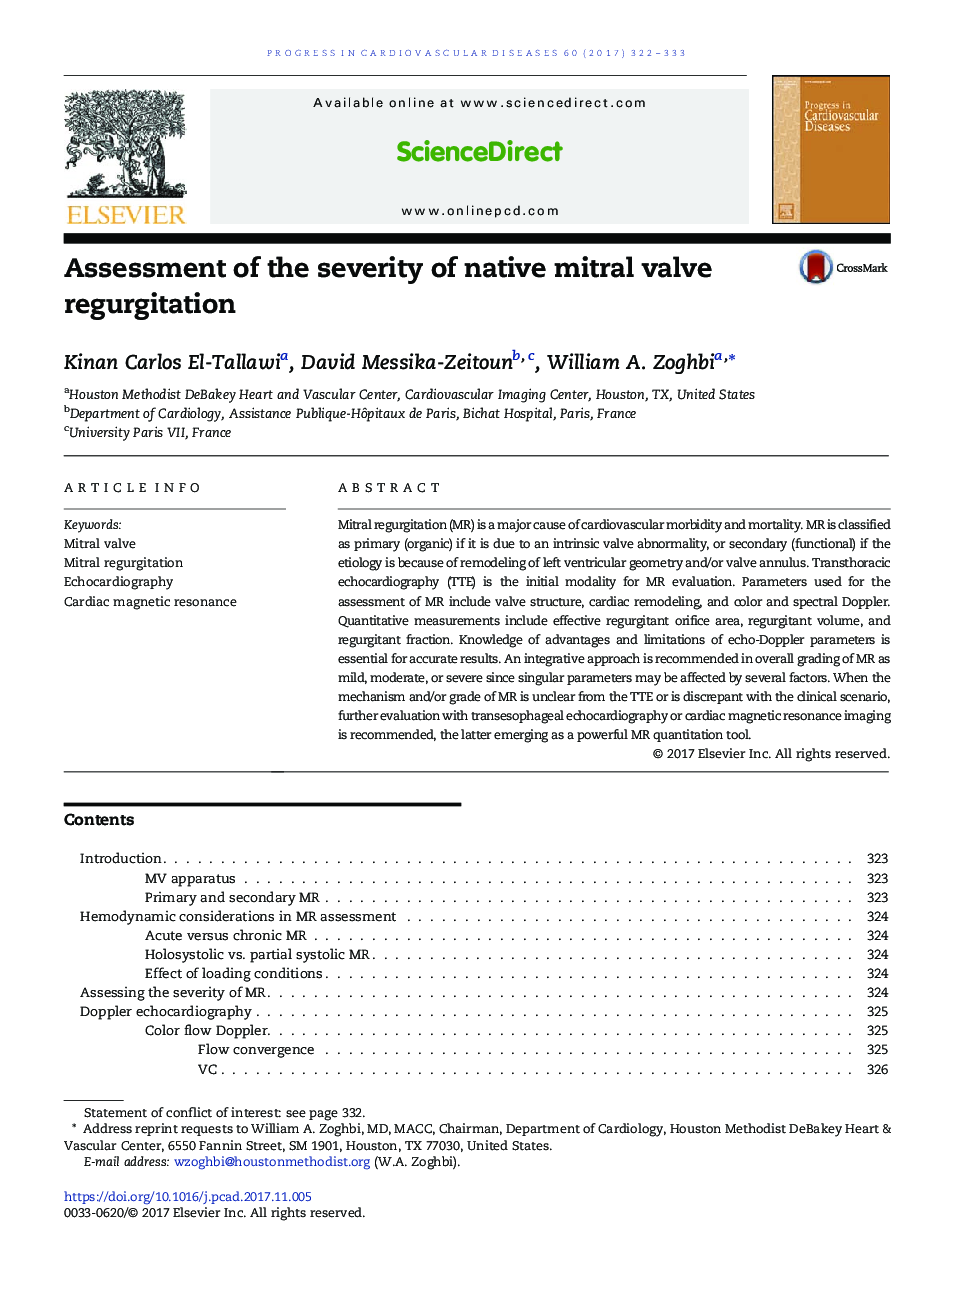 Assessment of the severity of native mitral valve regurgitation